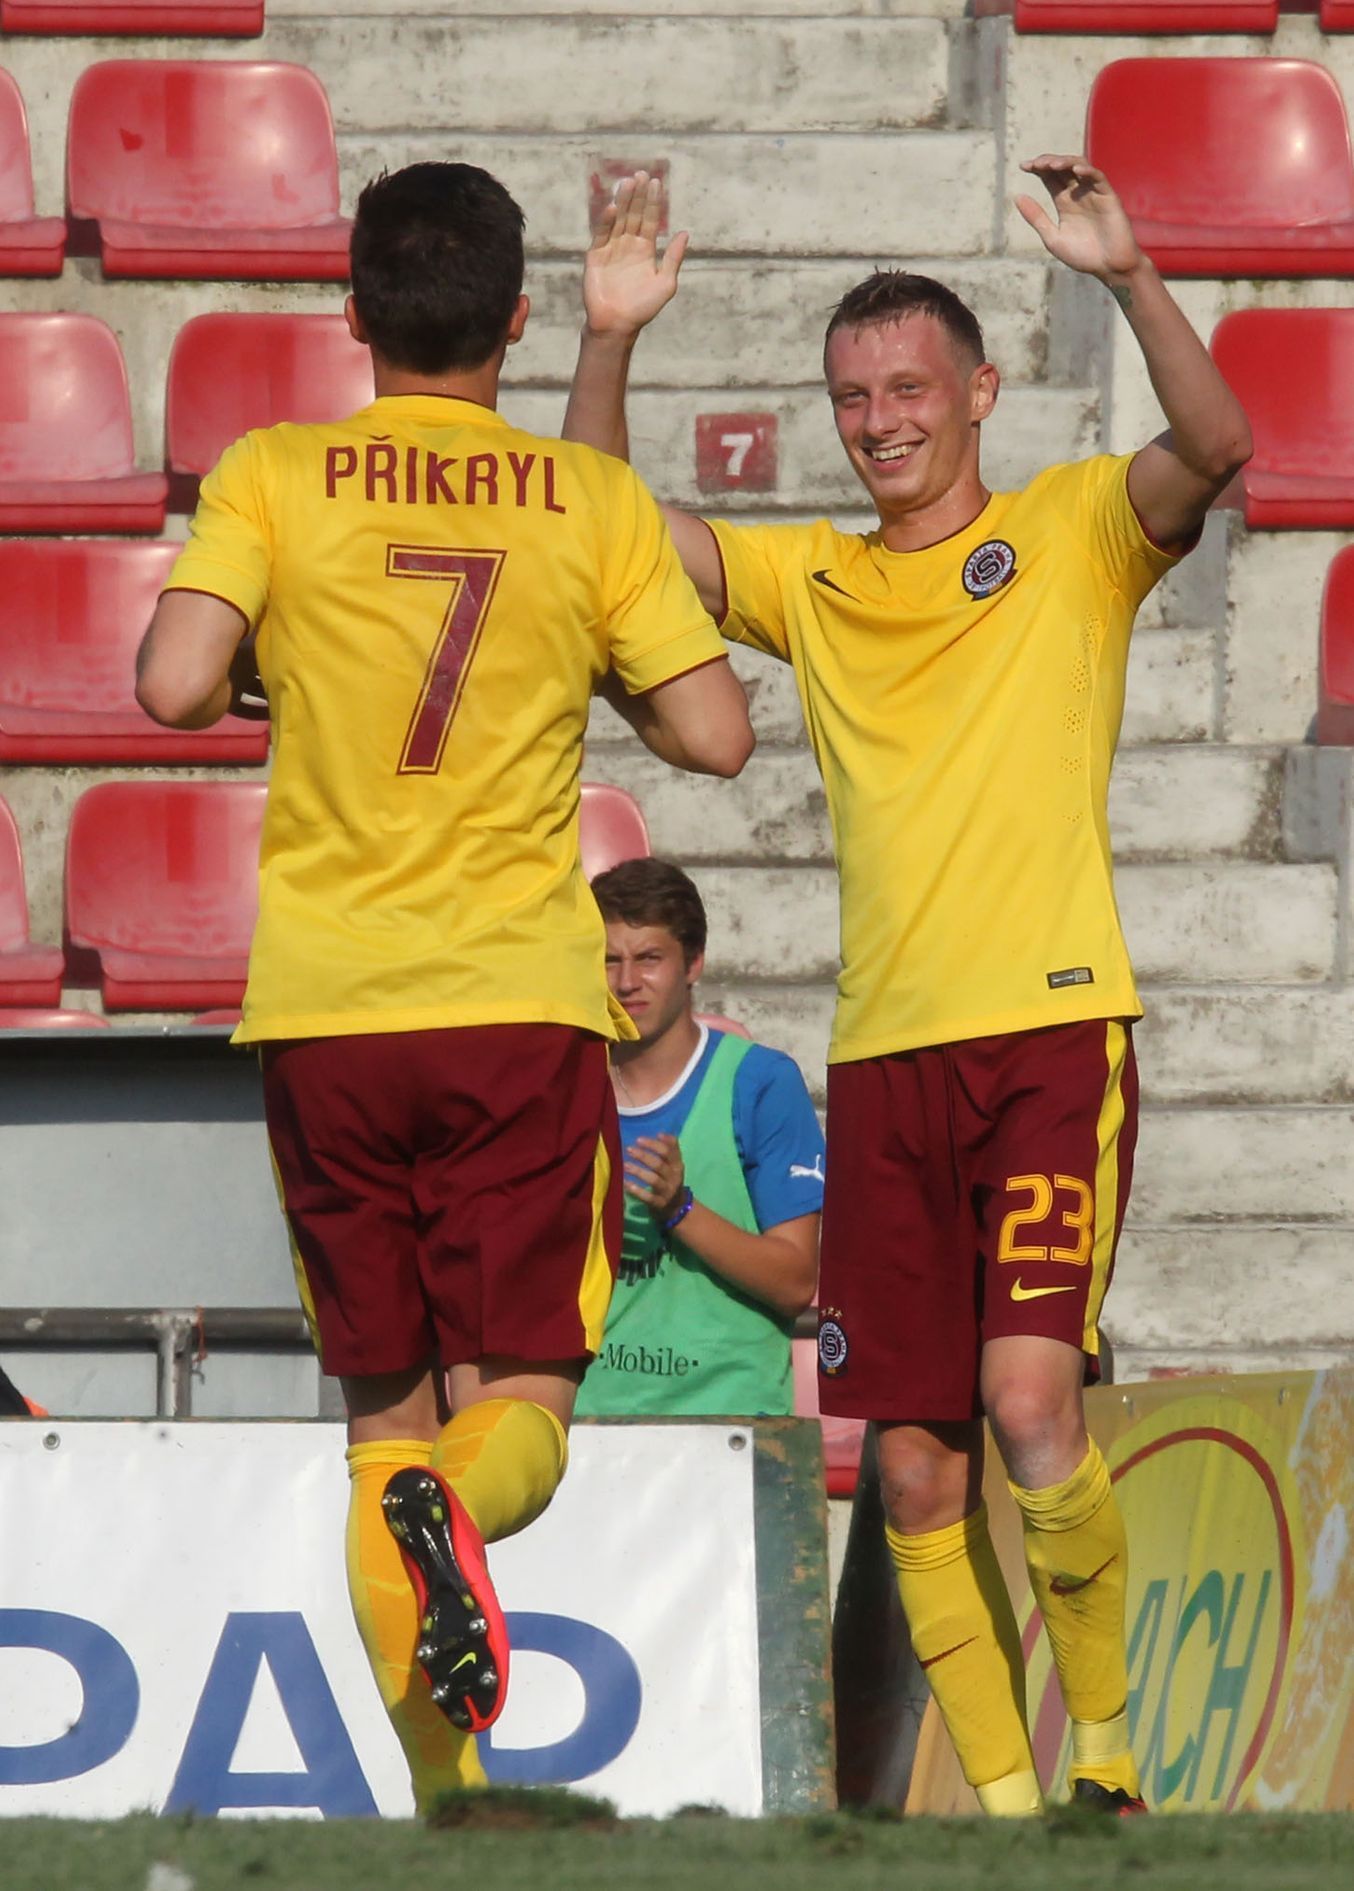 Superpohár 2014, Sparta-Plzeň: Ladislav Krejčí (vpravo) slaví gól